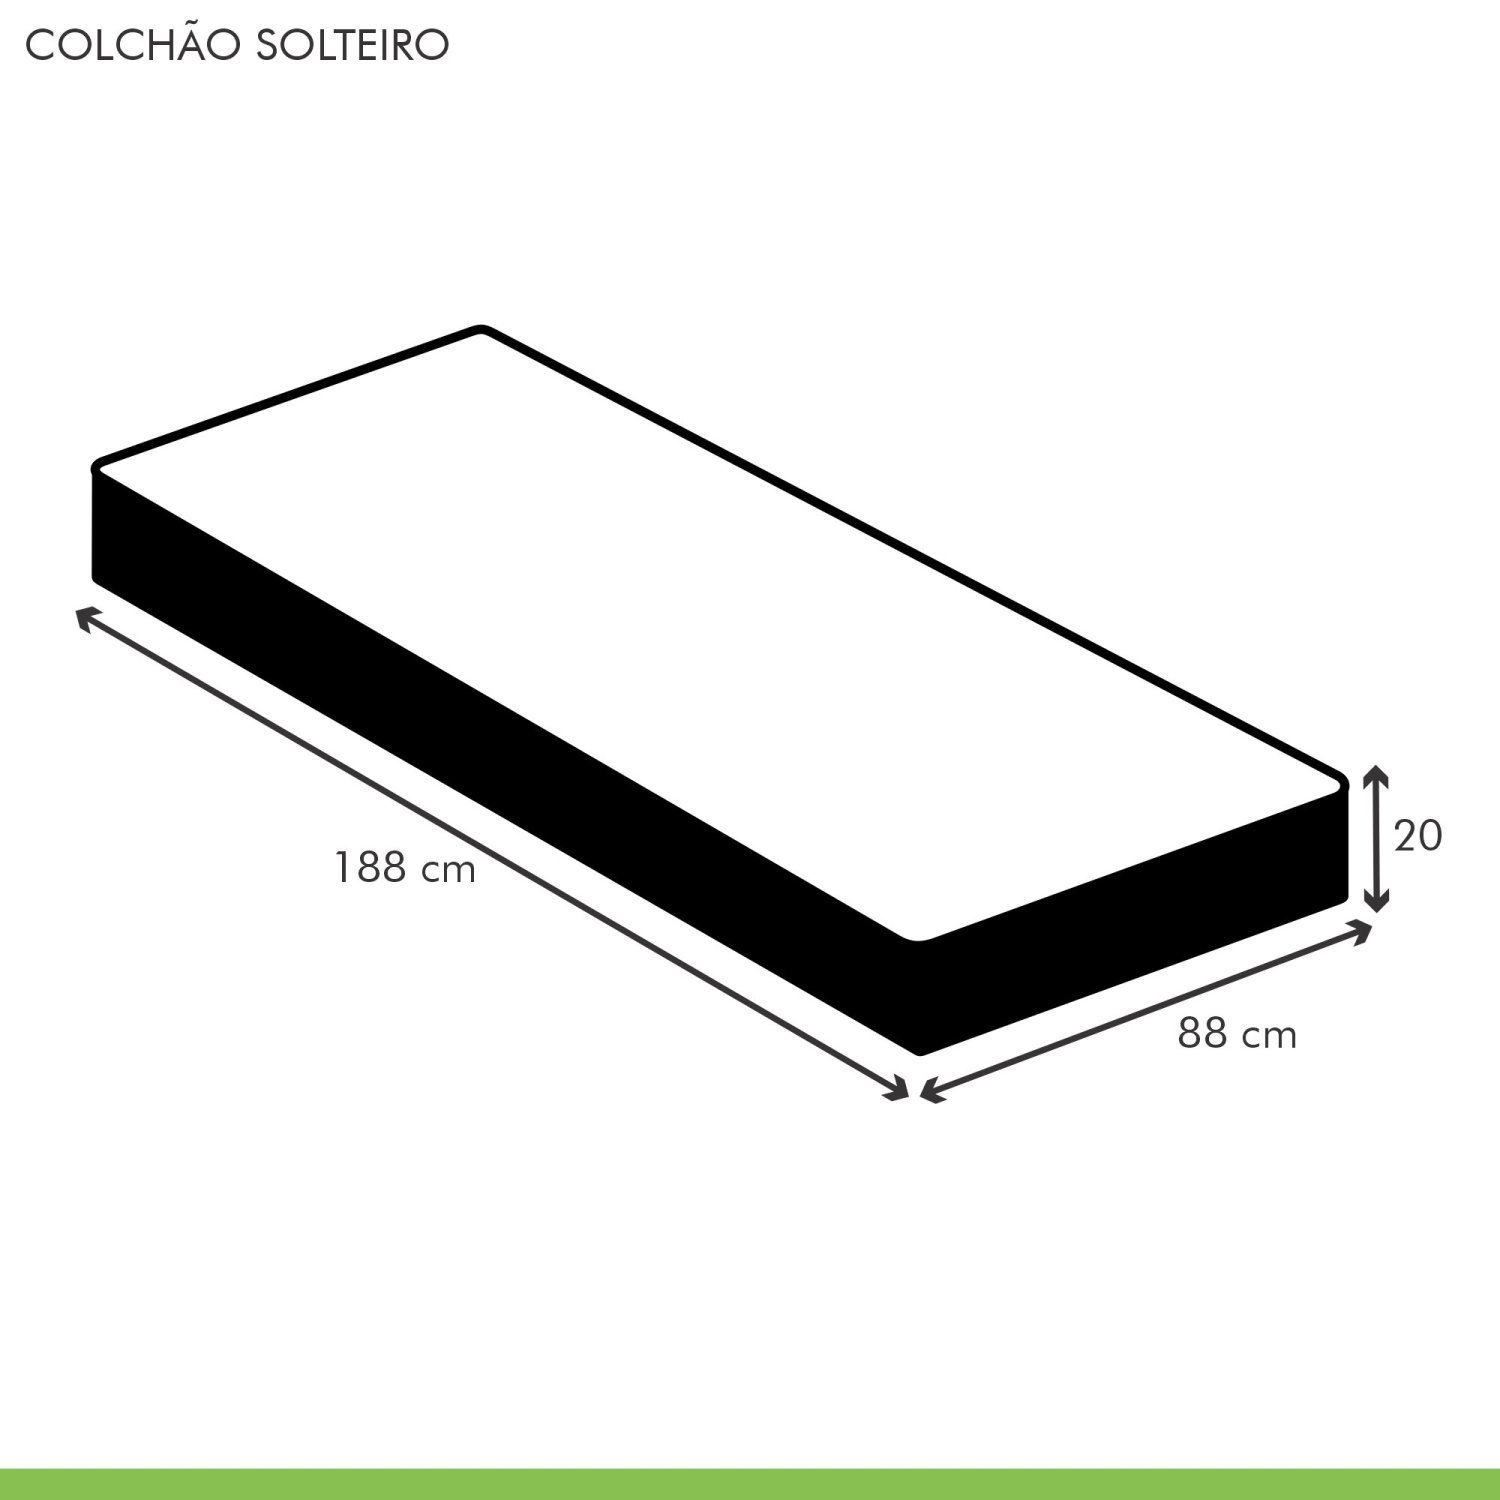 Colchão Solteiro Quality Plus Duoface 20x88x188cm  - 5